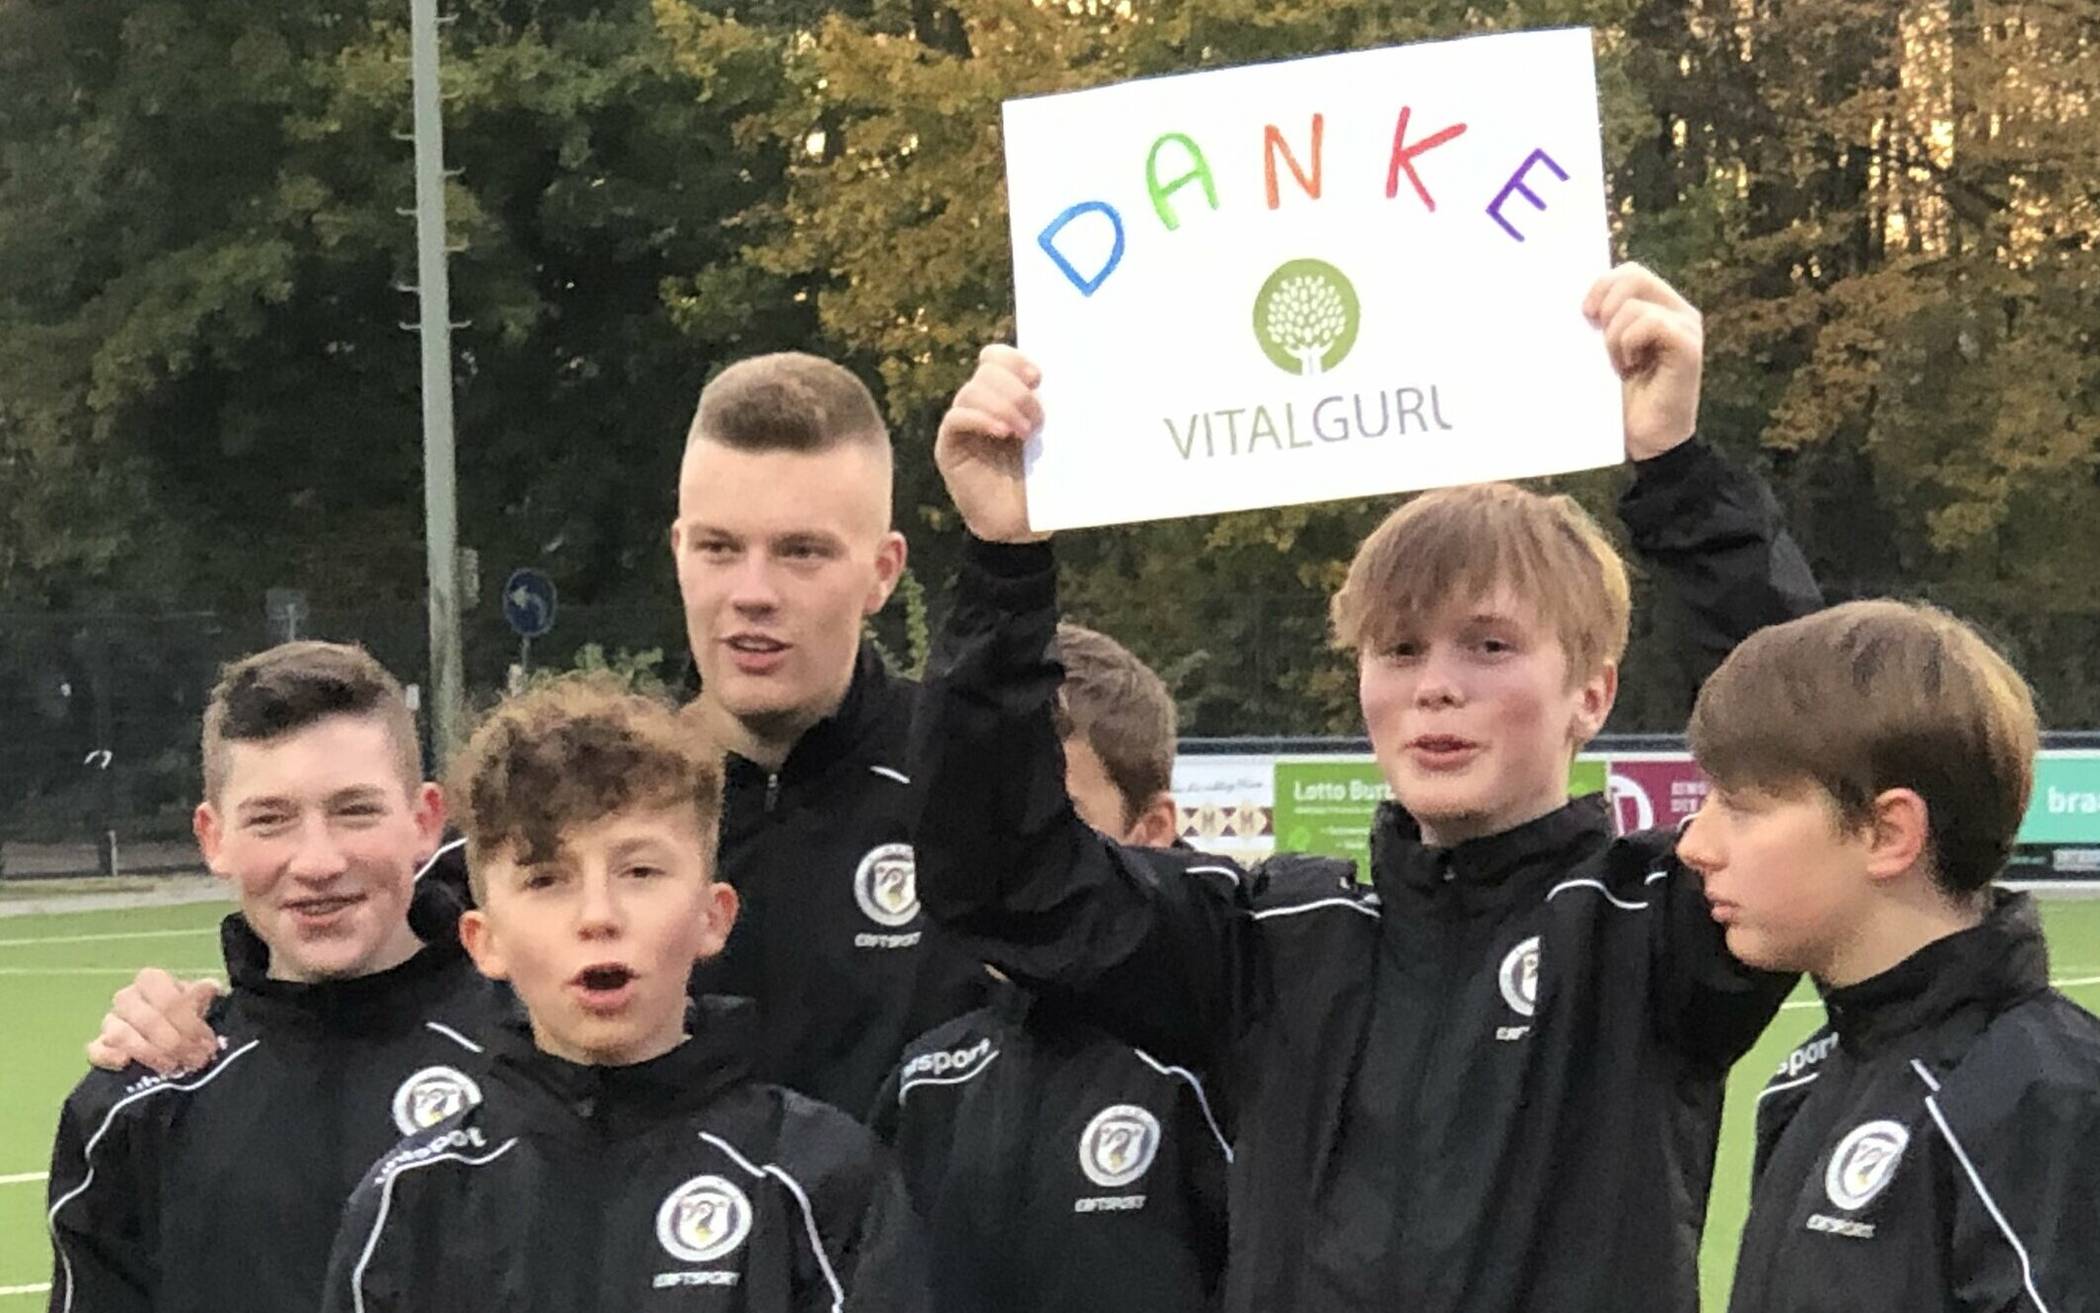  Begegnung mit dem Sponsor: Donat Brandt und sein „Vital-Guru“ sponsern ganz bewusst die C2 des BV Wevelinghoven. Am vergangenen Freitag gab es ein erstes Treffen mit den jungen Kickern. 